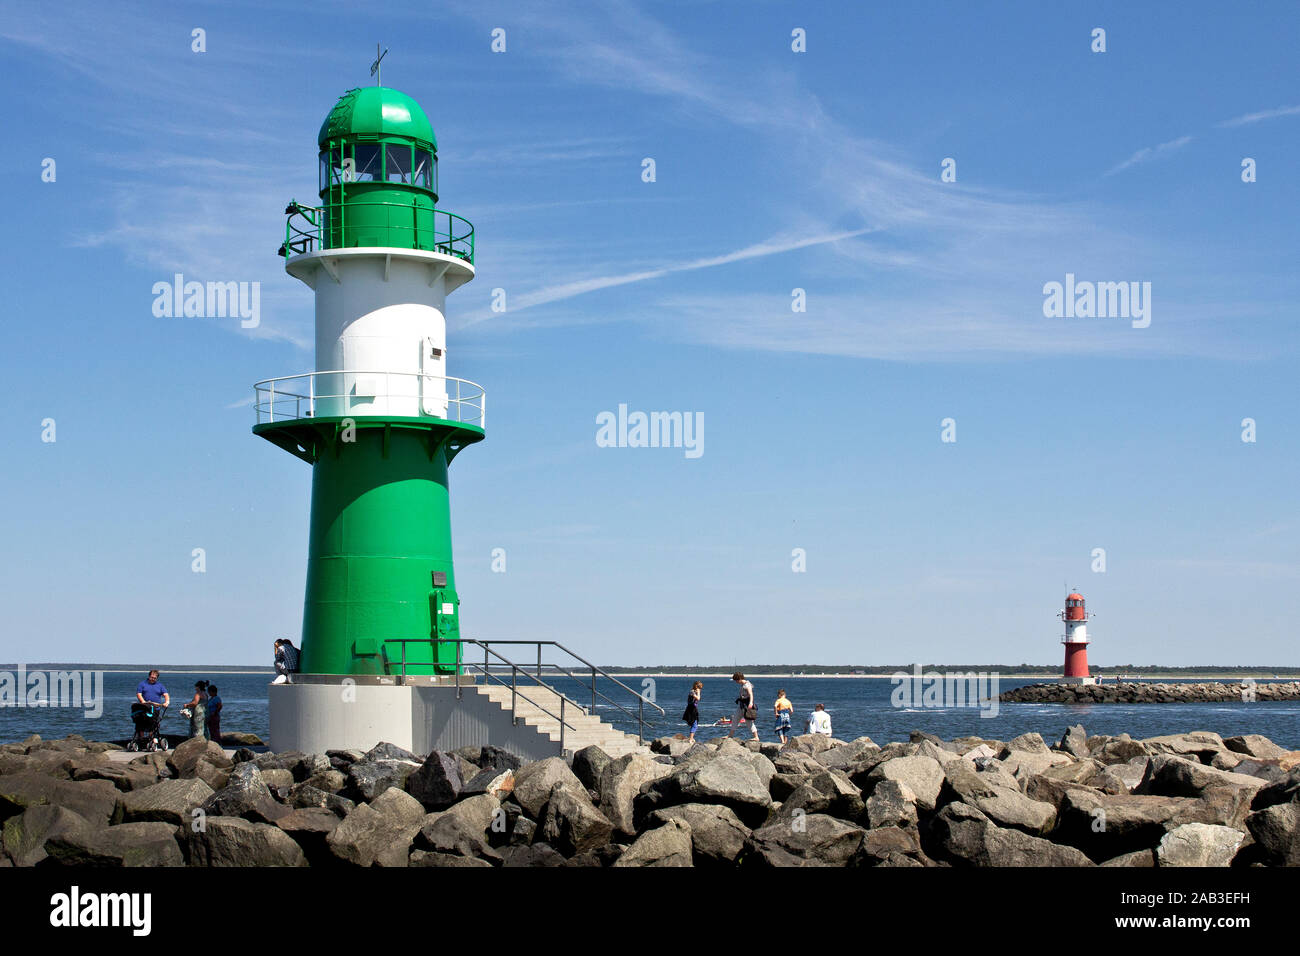 Die beiden Leuchttürme auf den Molen vor dem Hafen von Warnemünde |Les deux phares sur les quais dans le port de Warnemünde| Banque D'Images